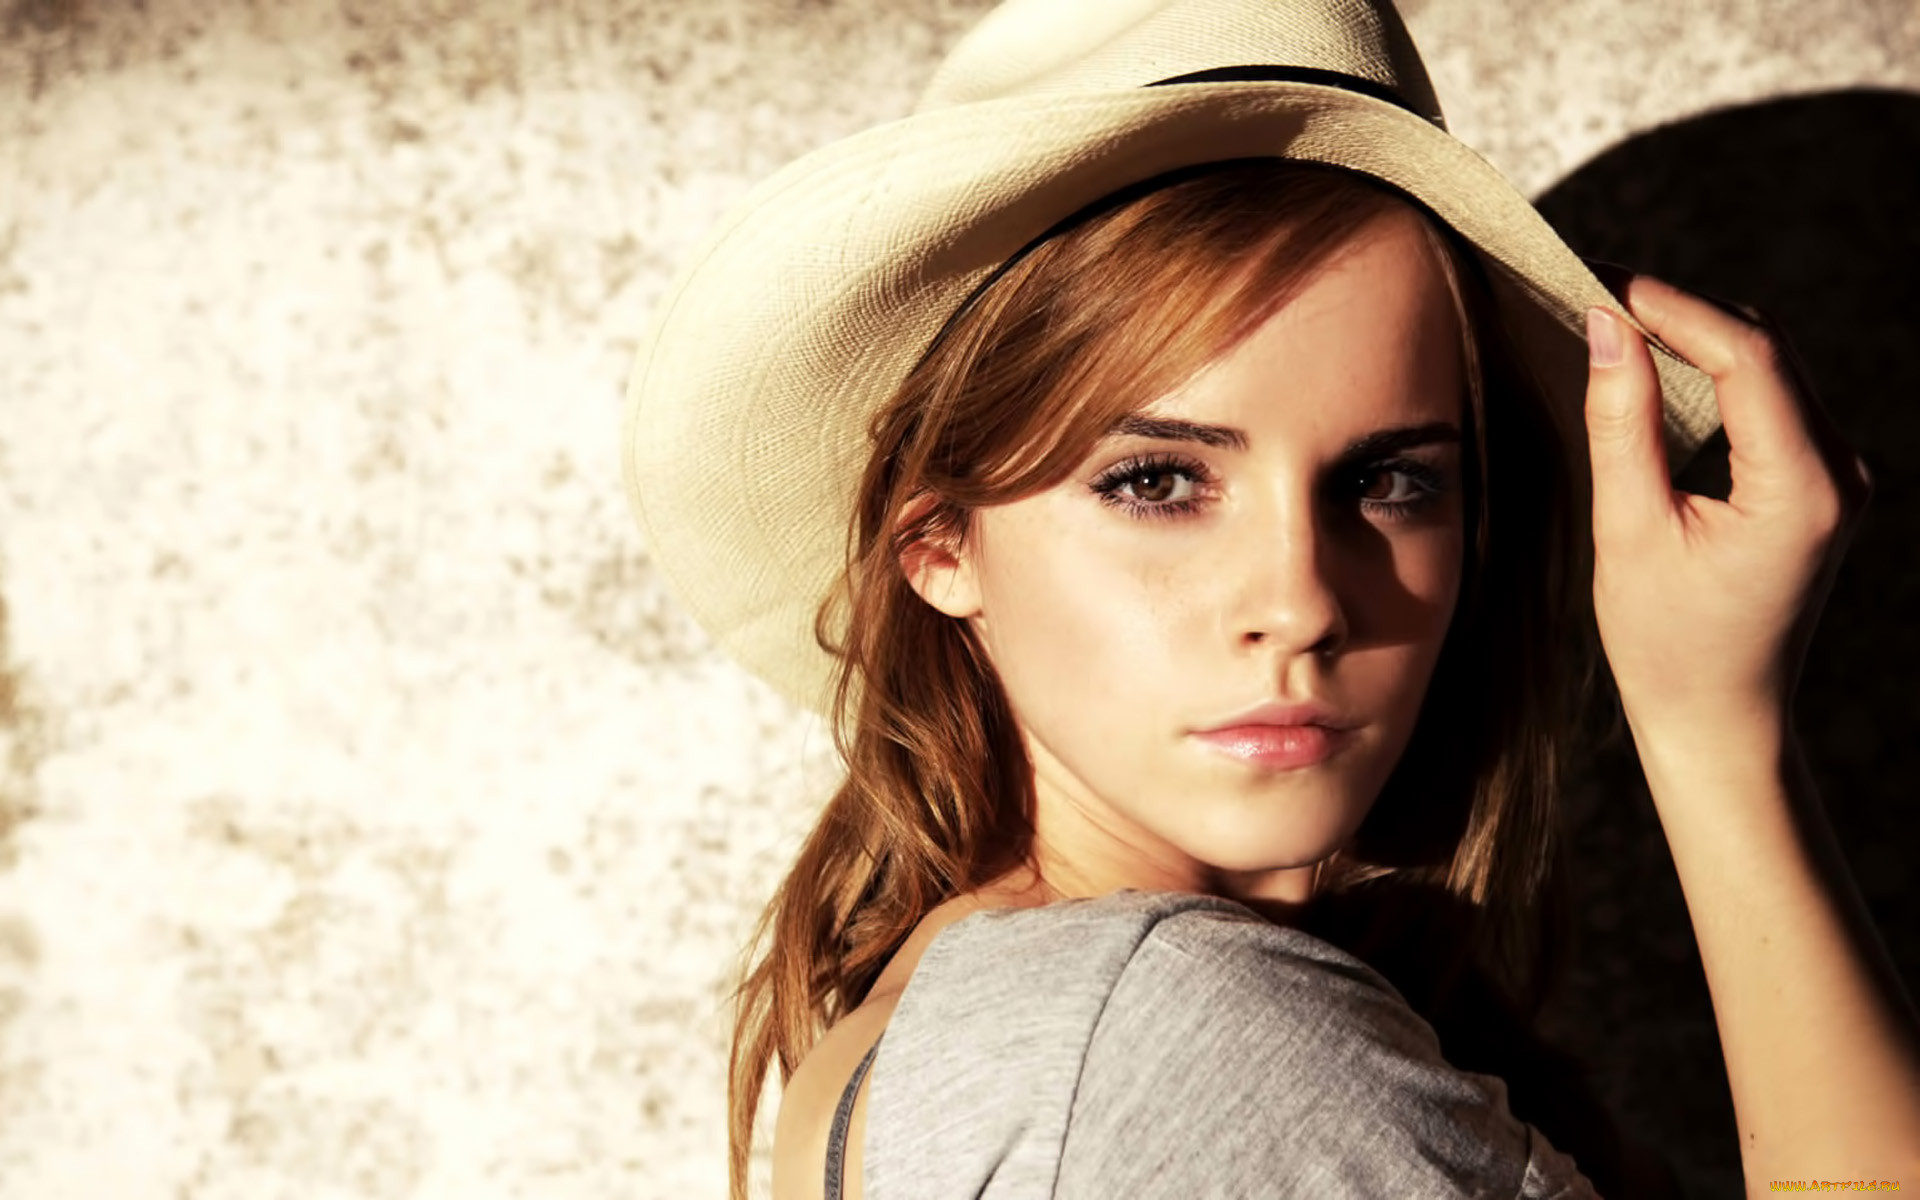 Emma Watson, 